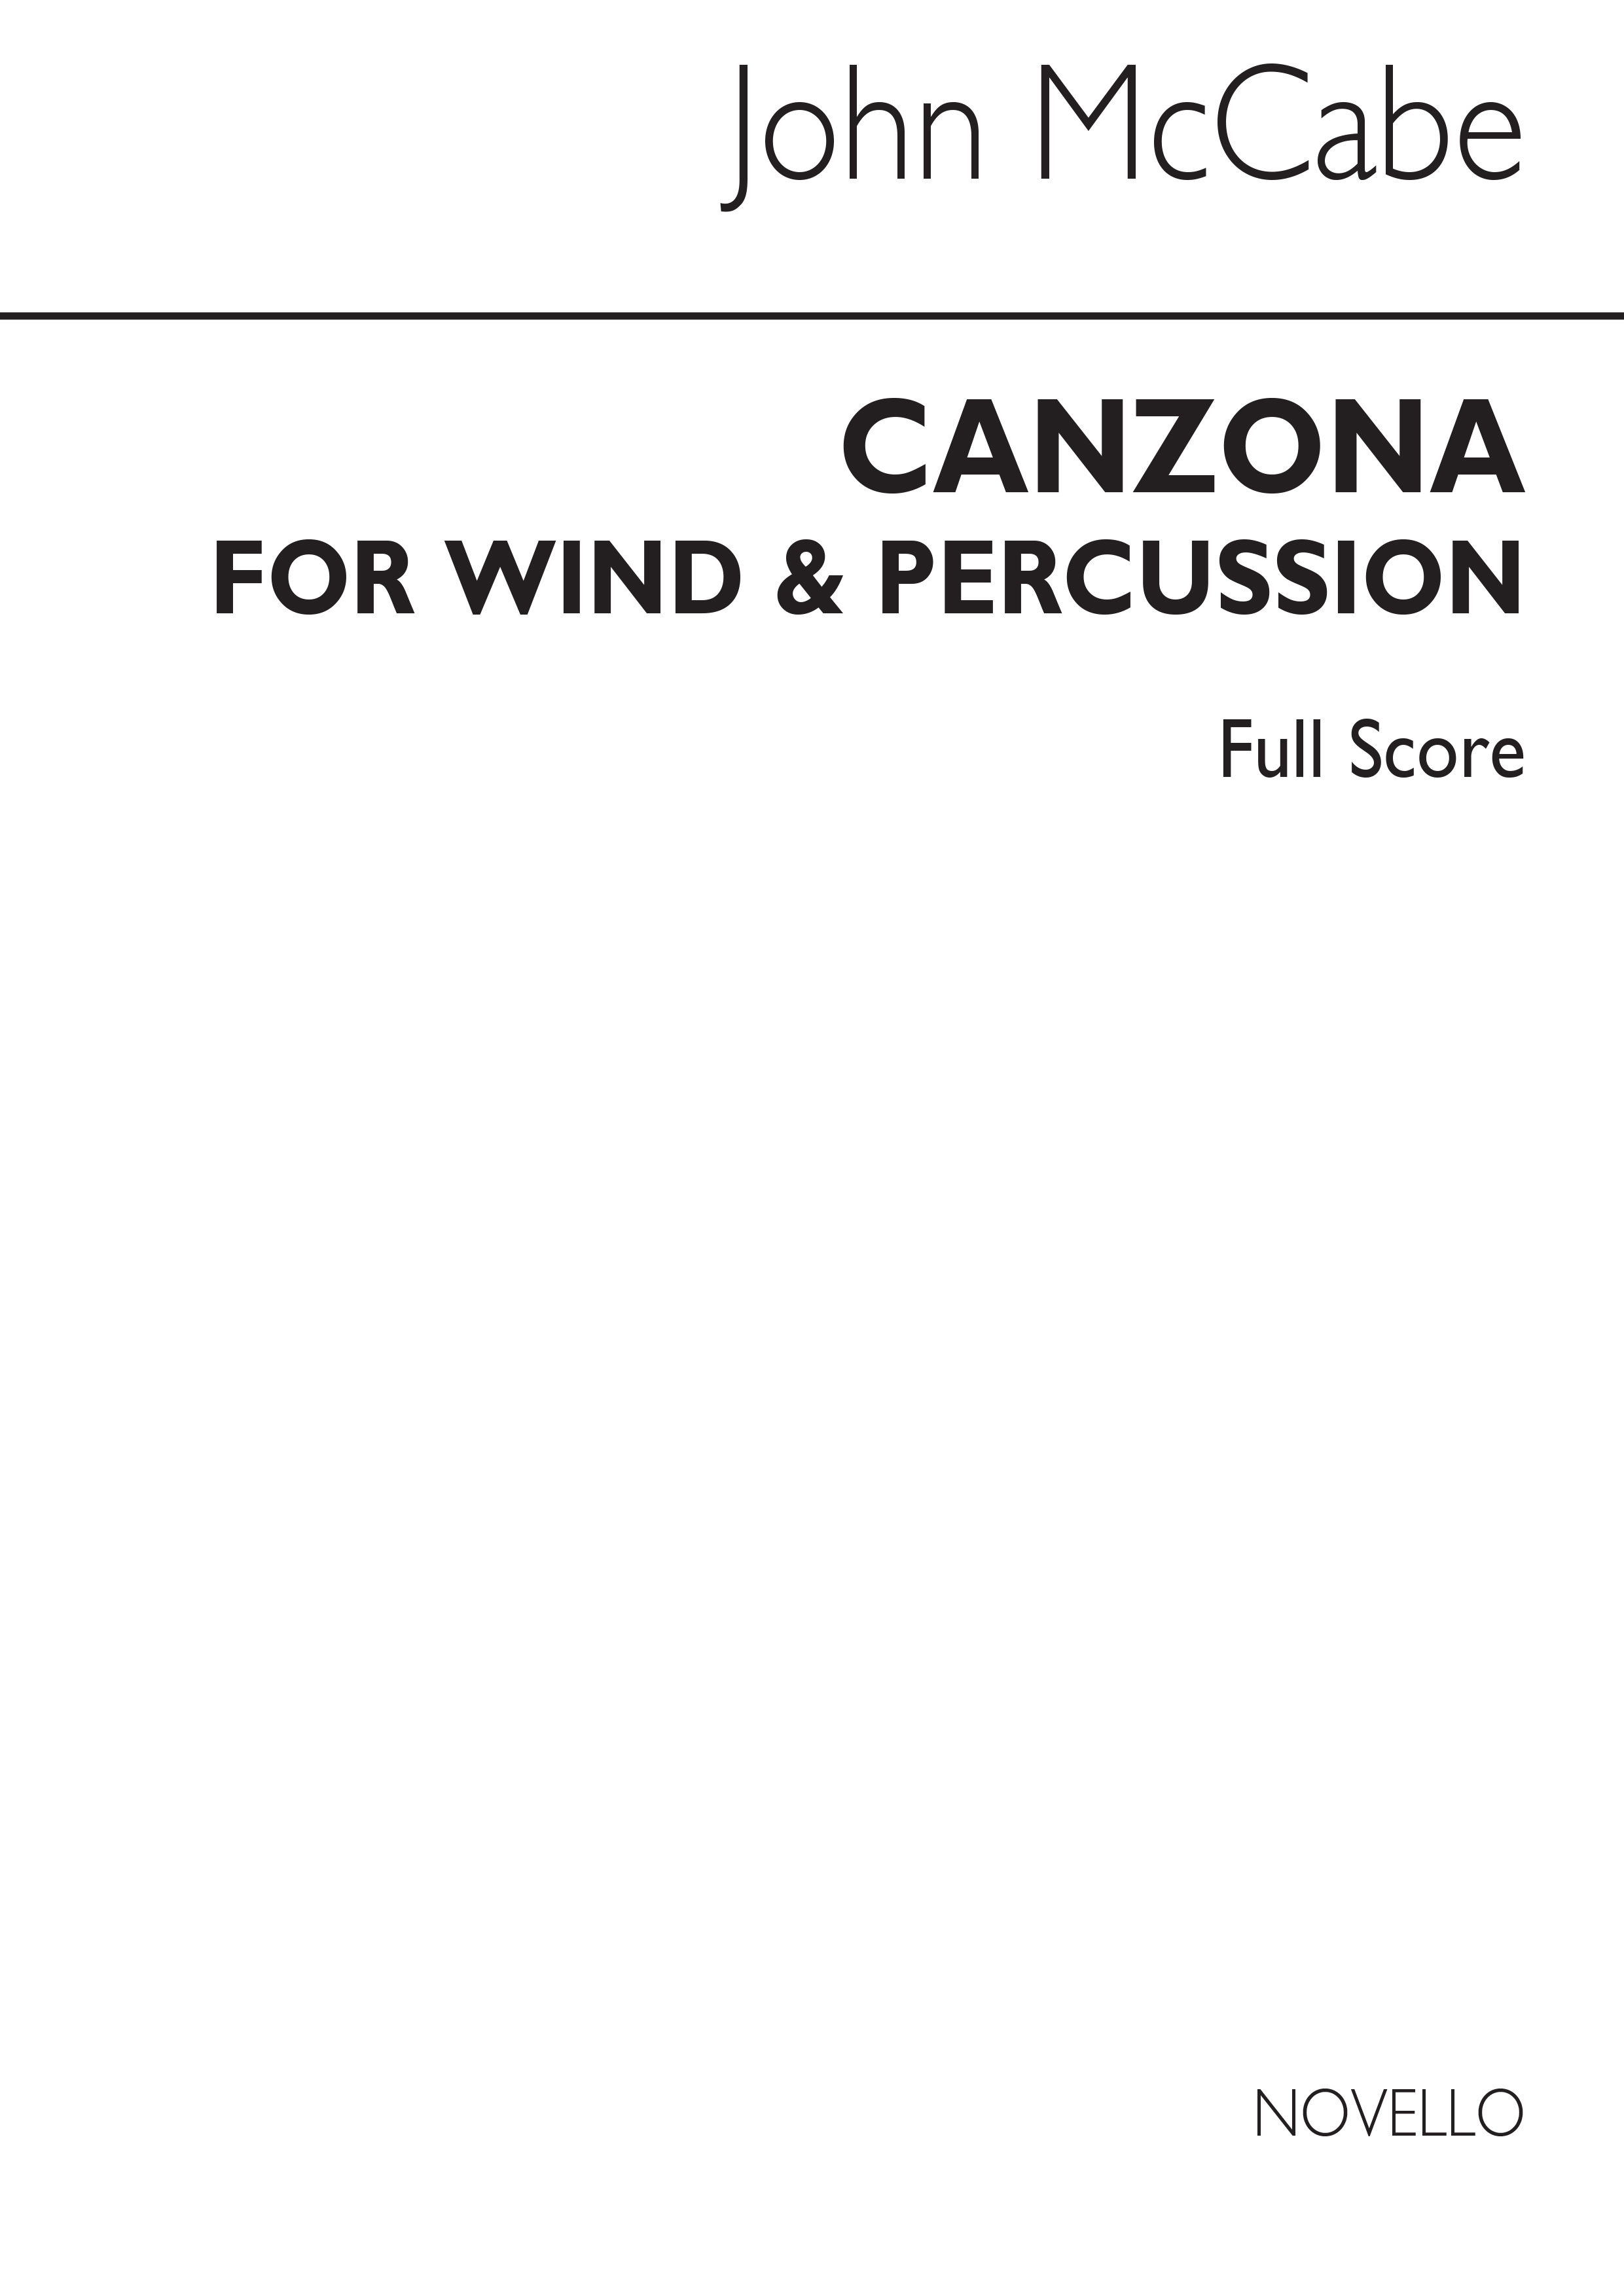 McCabe: Canzona For Wind & Percussion (Score)